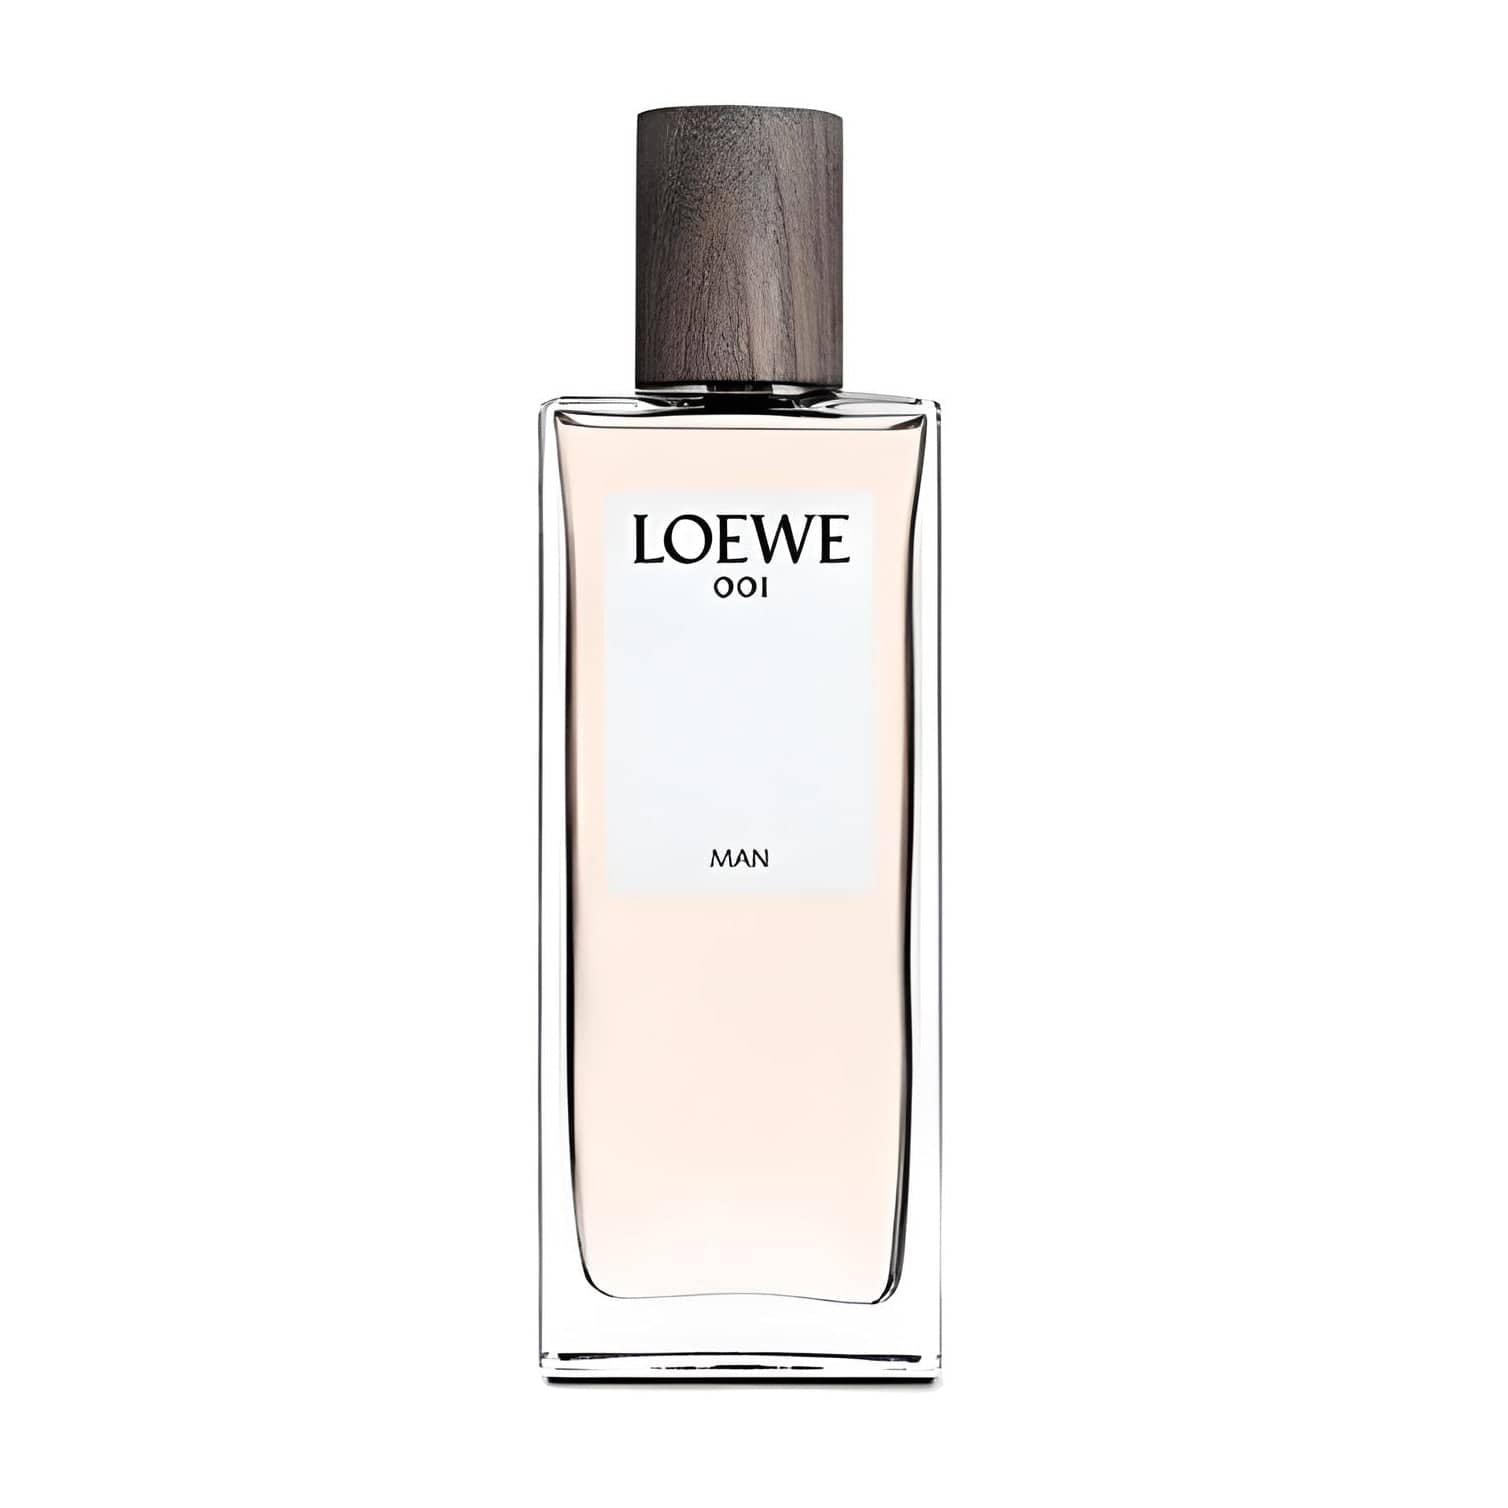 LOEWE 001 MAN Eau de Parfum